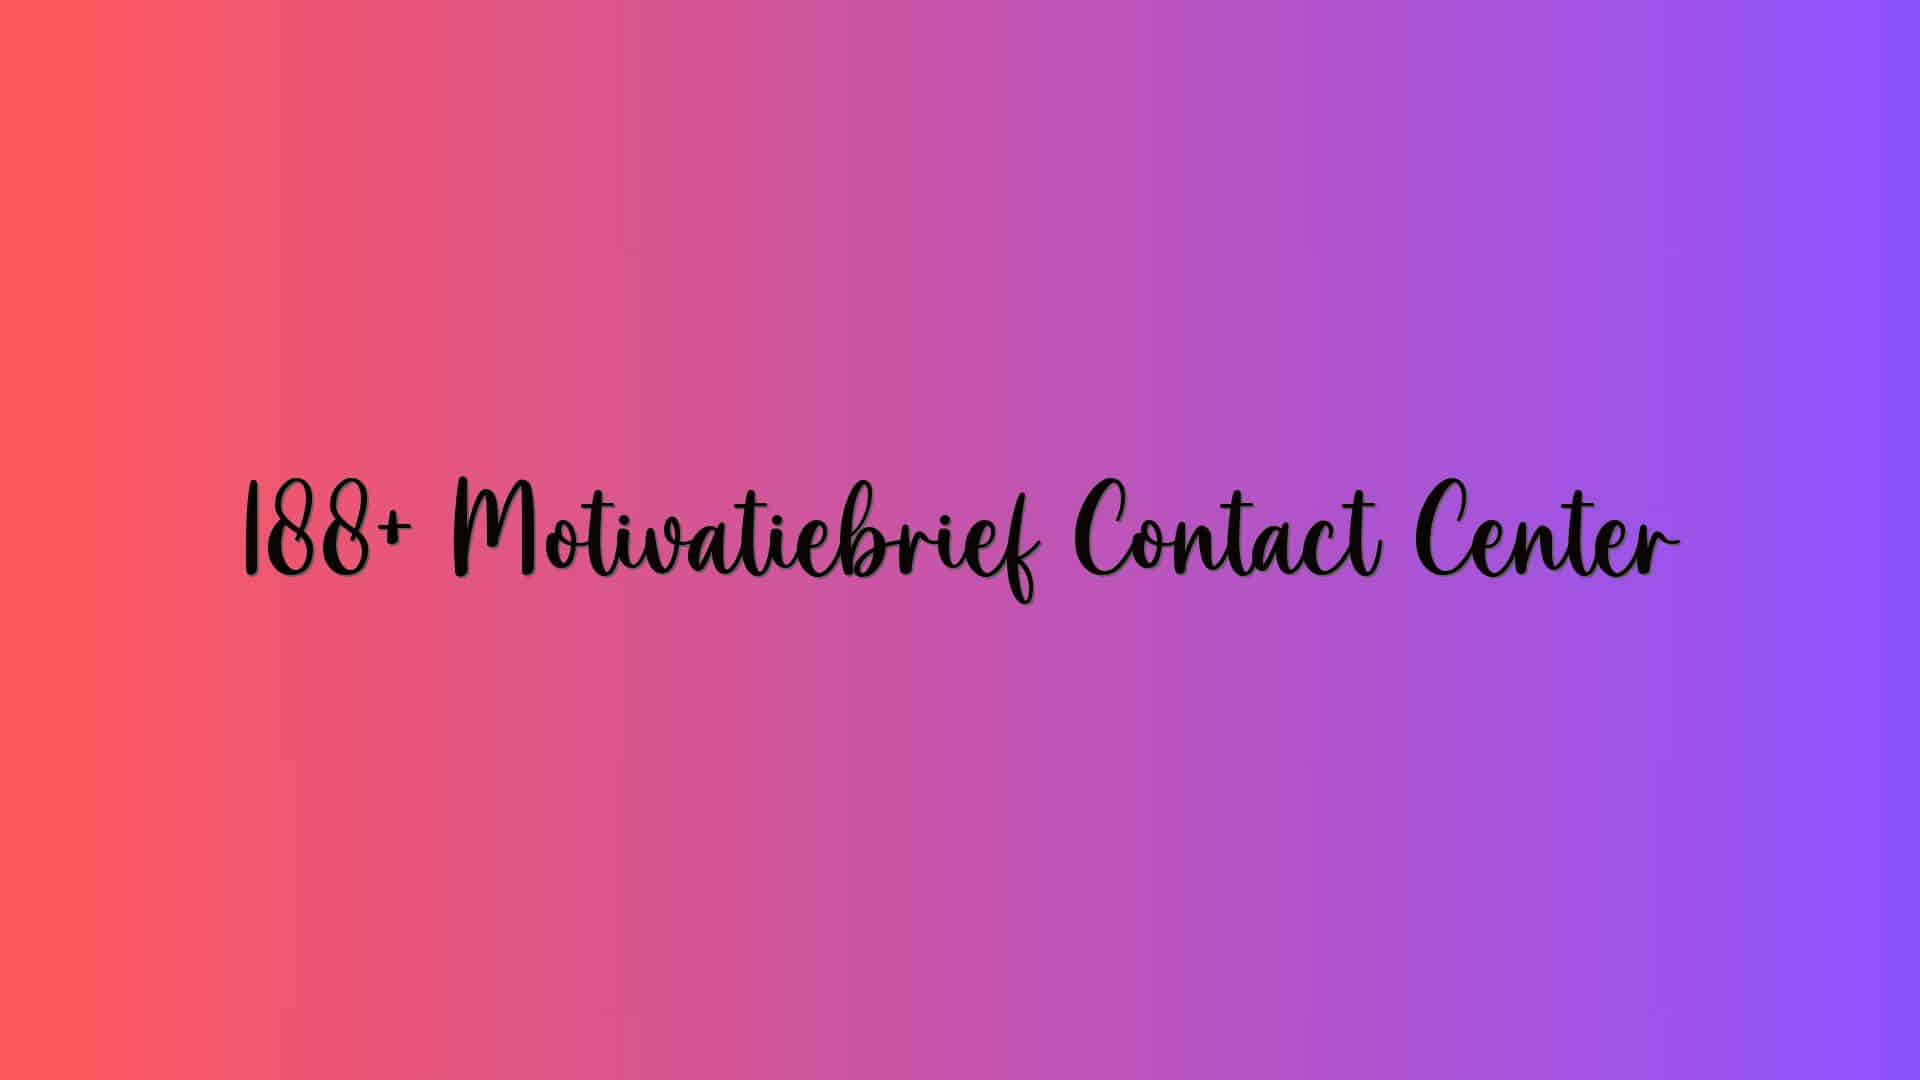 188+ Motivatiebrief Contact Center